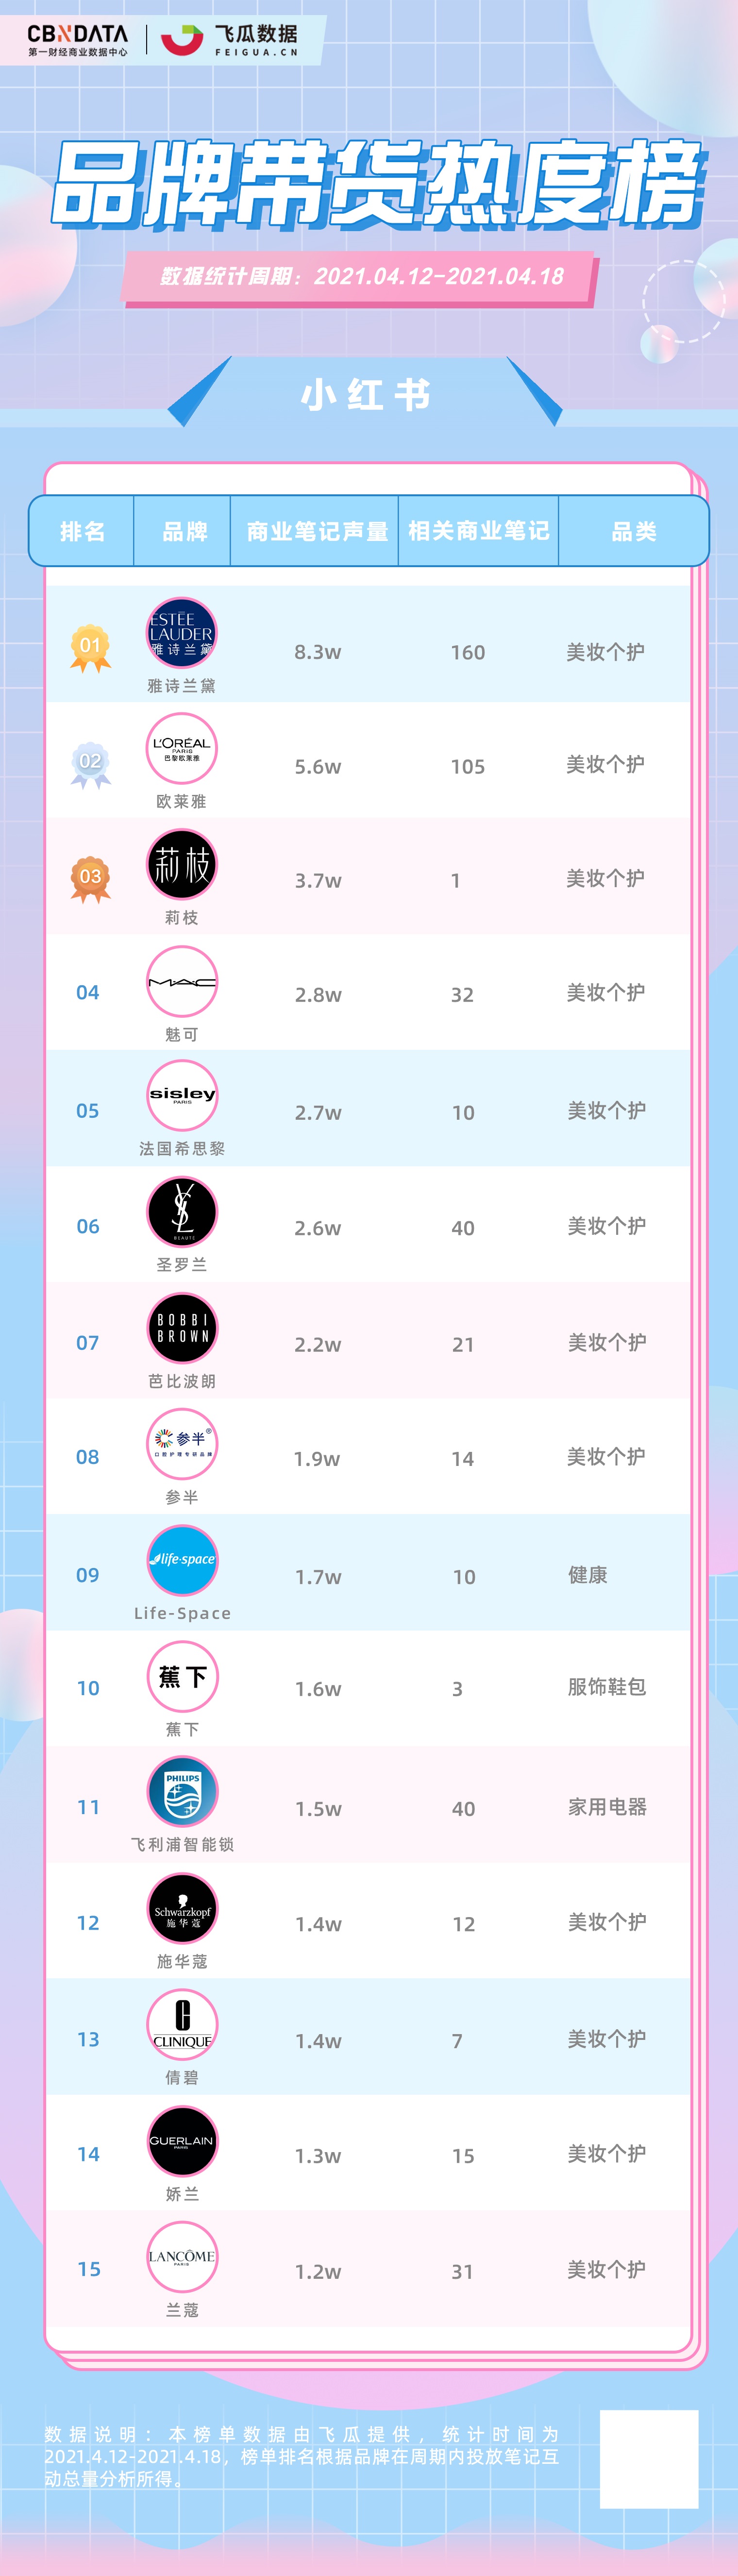 淘品牌美妆销售排行TOP10